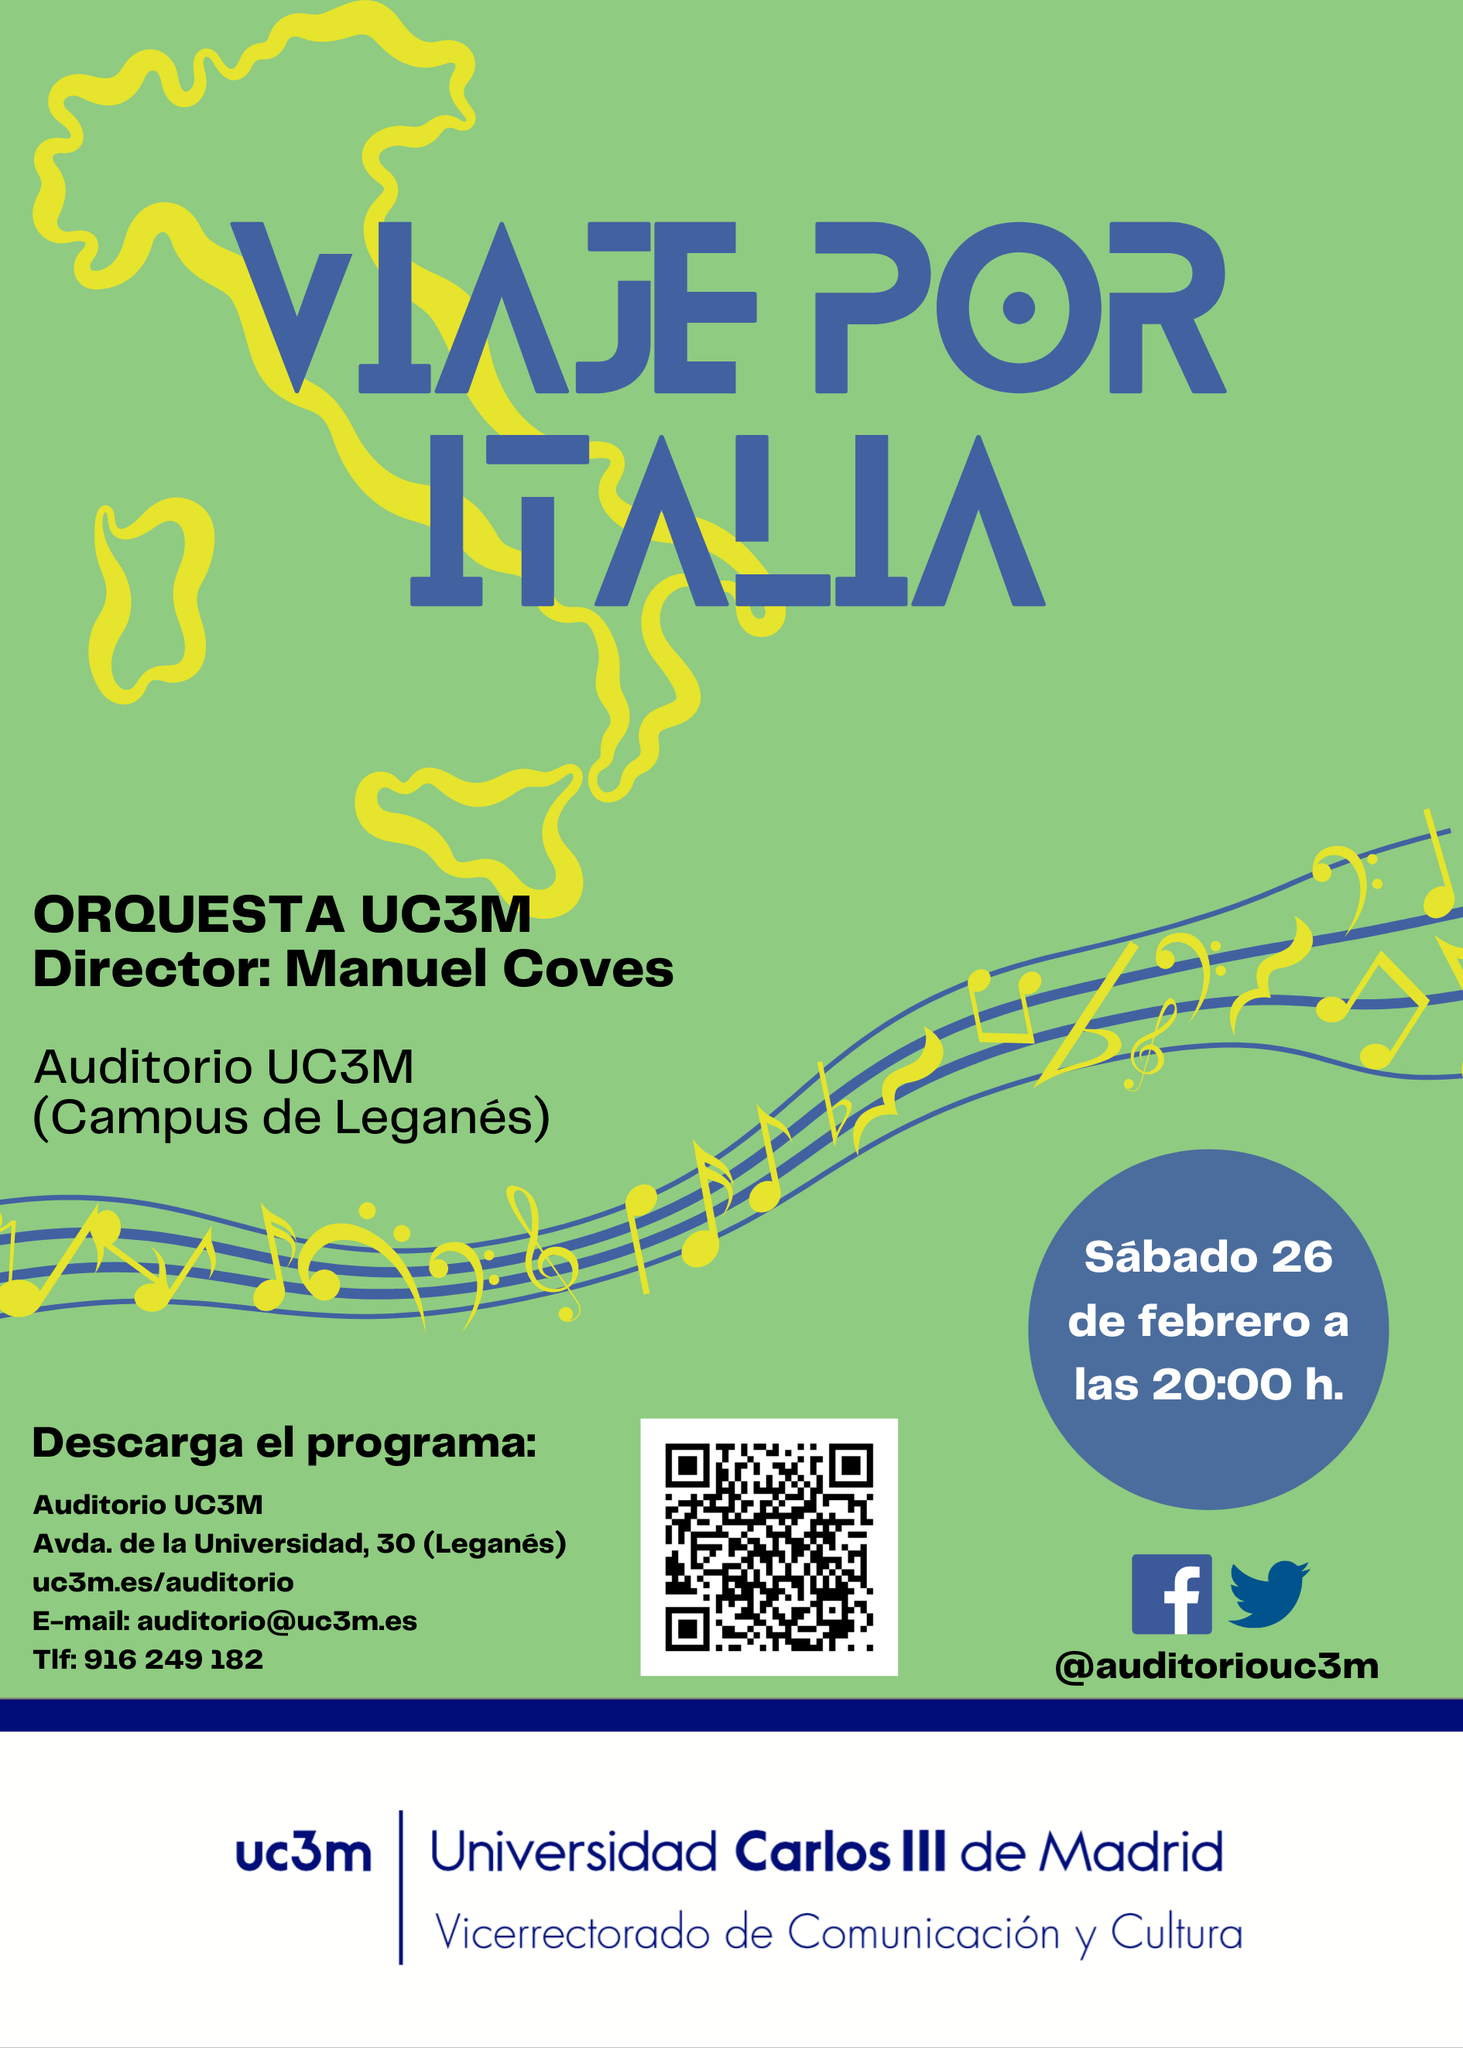 Orquesta UC3M - Viaje por Italia